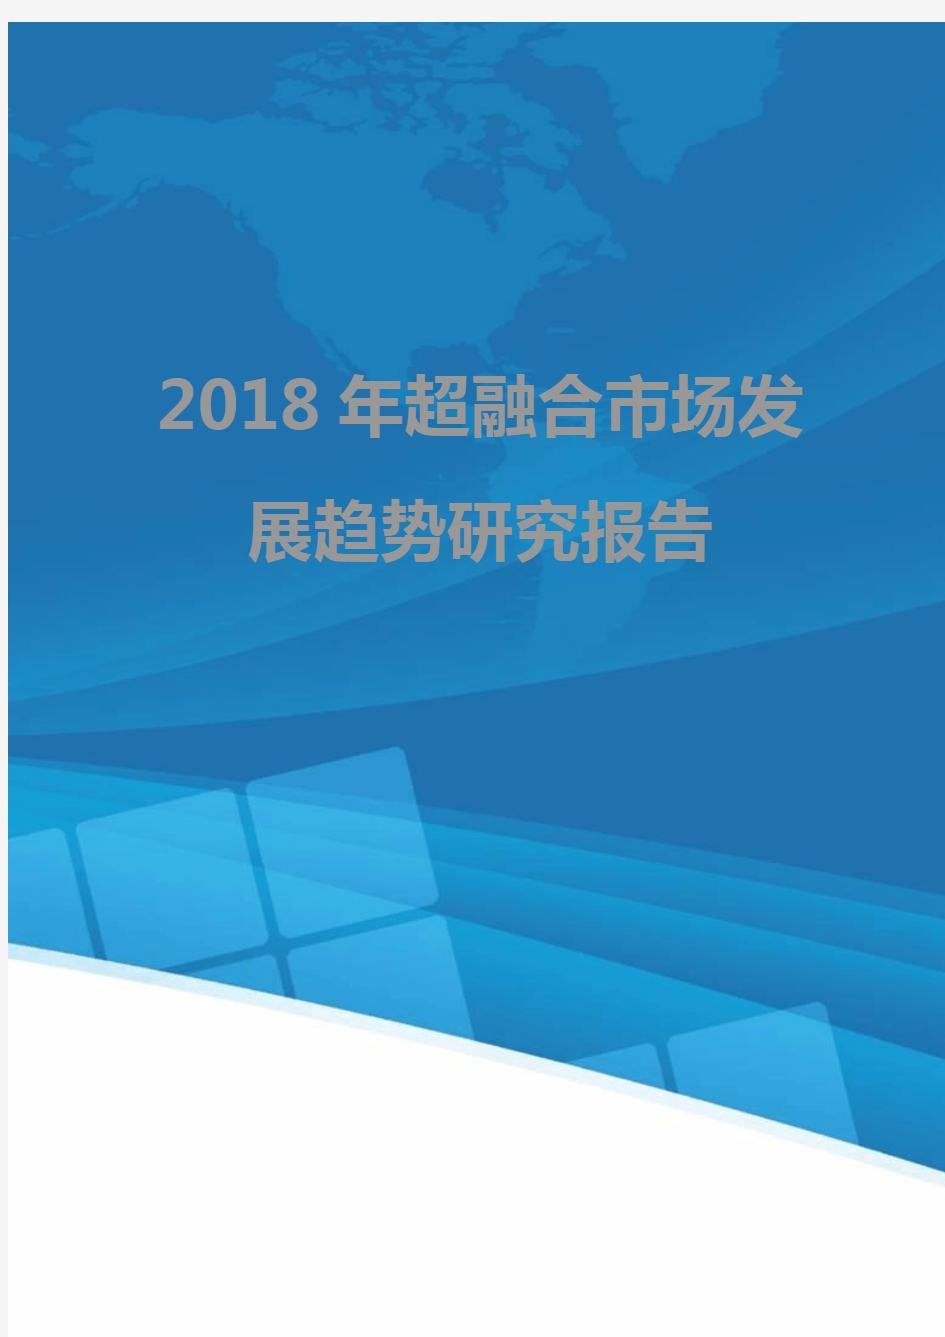 2018年超融合市场发展趋势研究报告